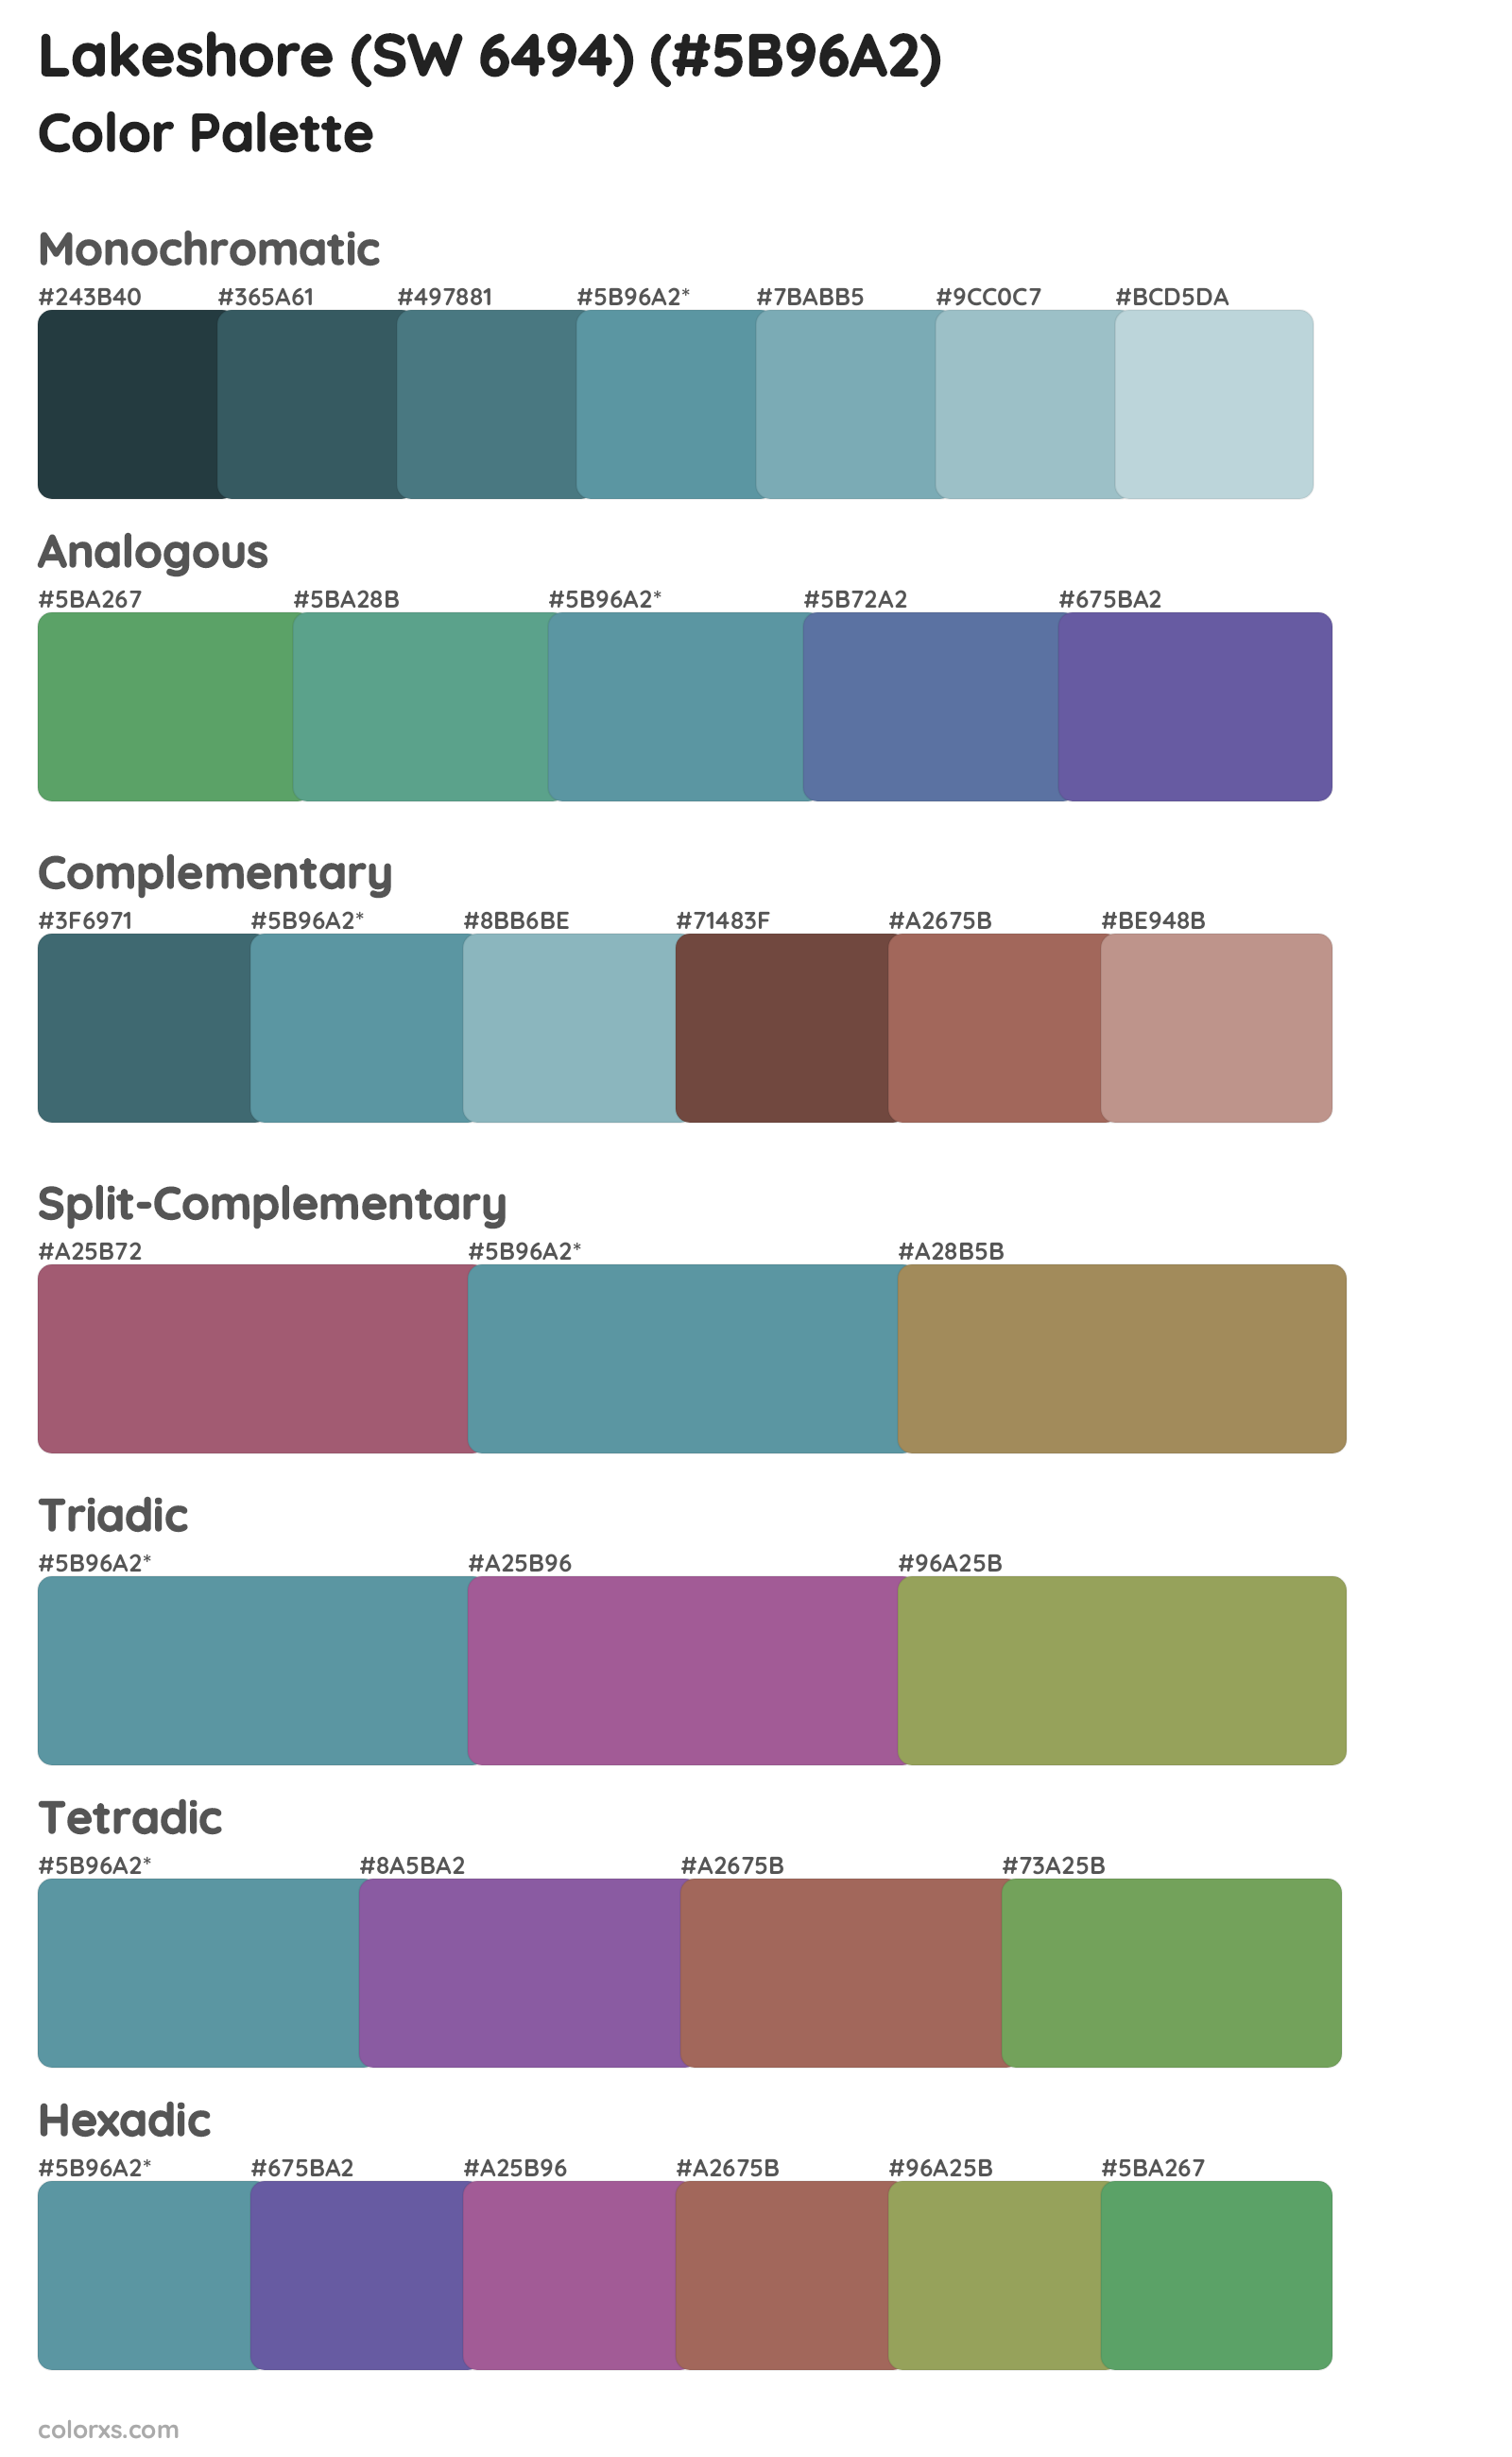 Lakeshore (SW 6494) Color Scheme Palettes